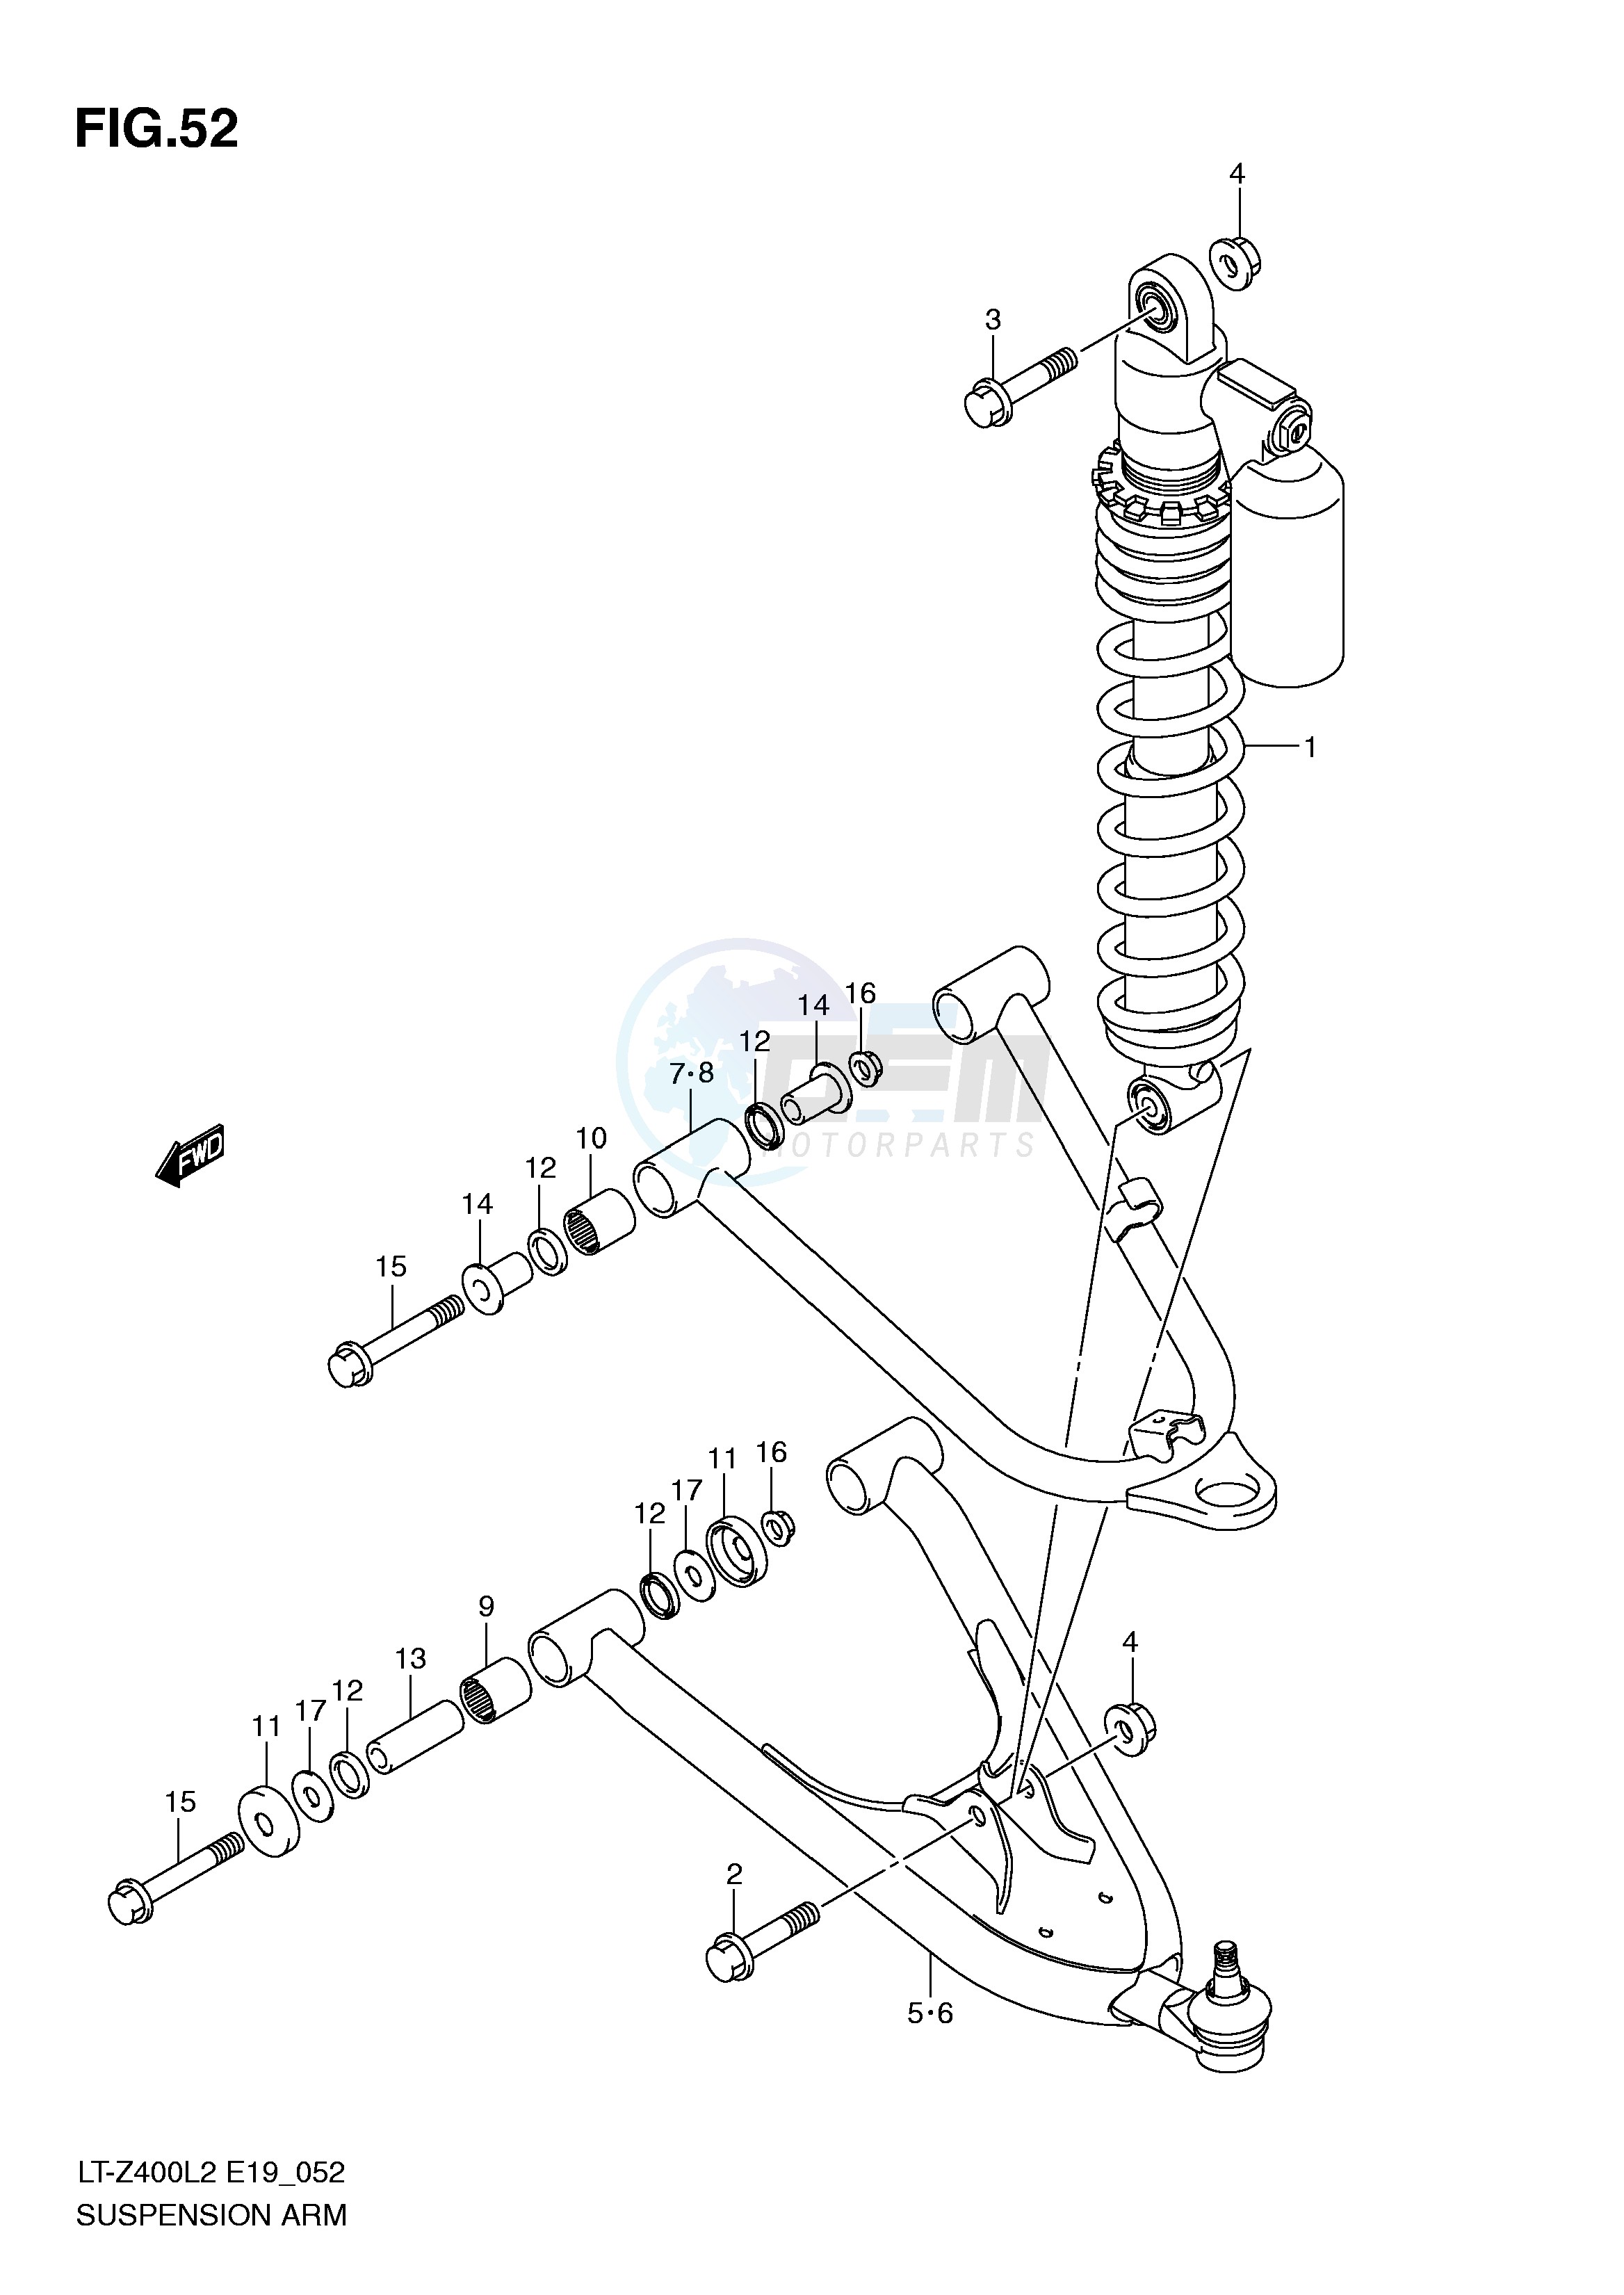 SUSPENSION ARM (LT-Z400ZL2 E19) blueprint